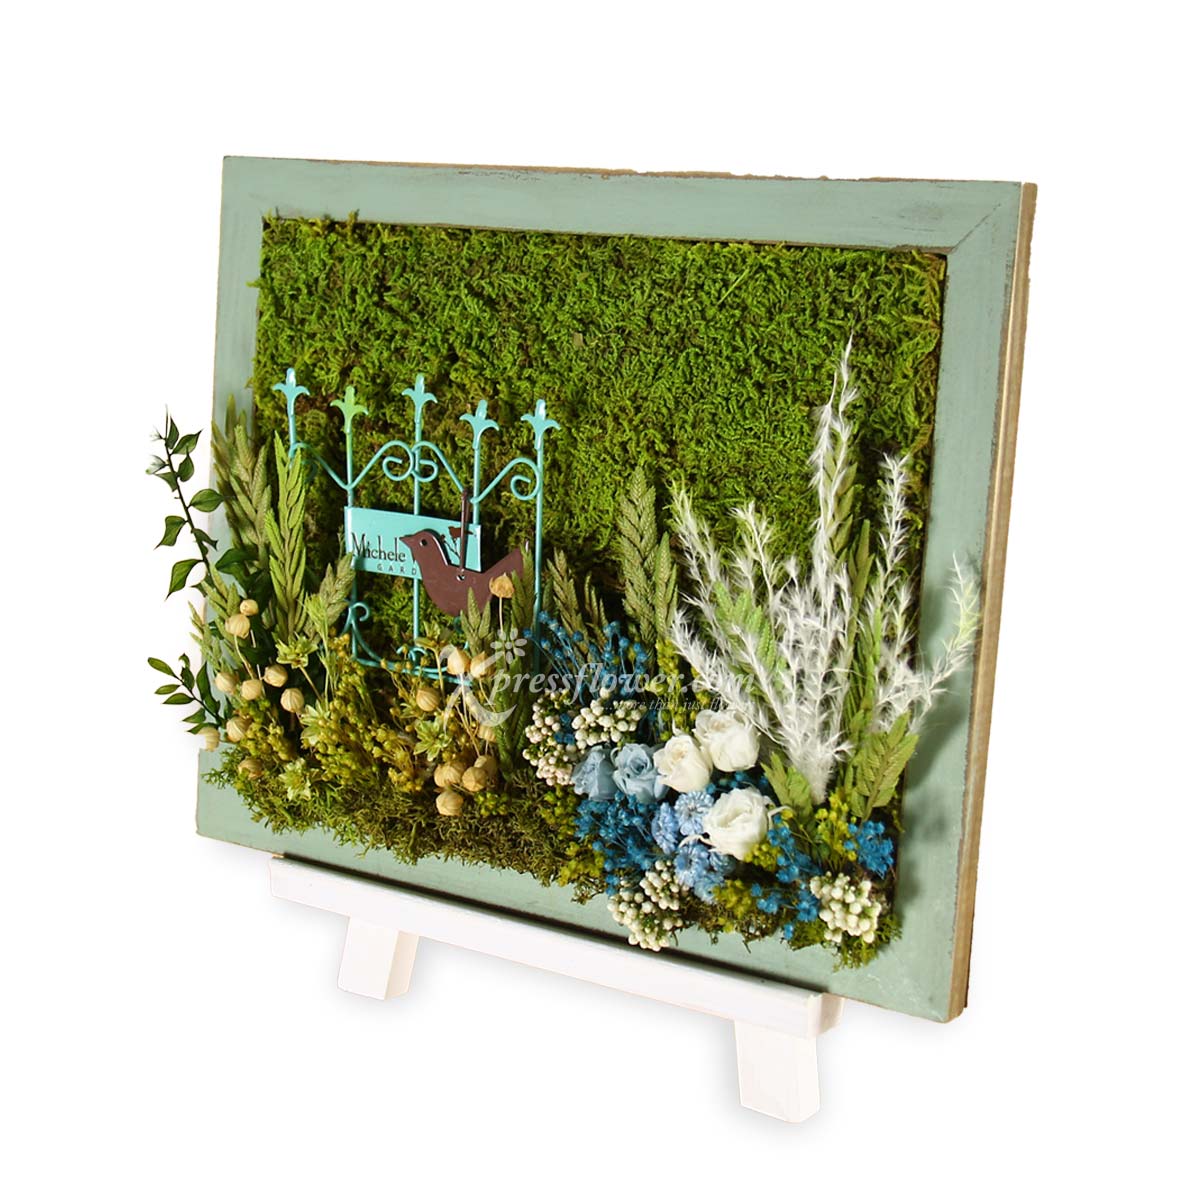 PS2105_French Garden Moss Art